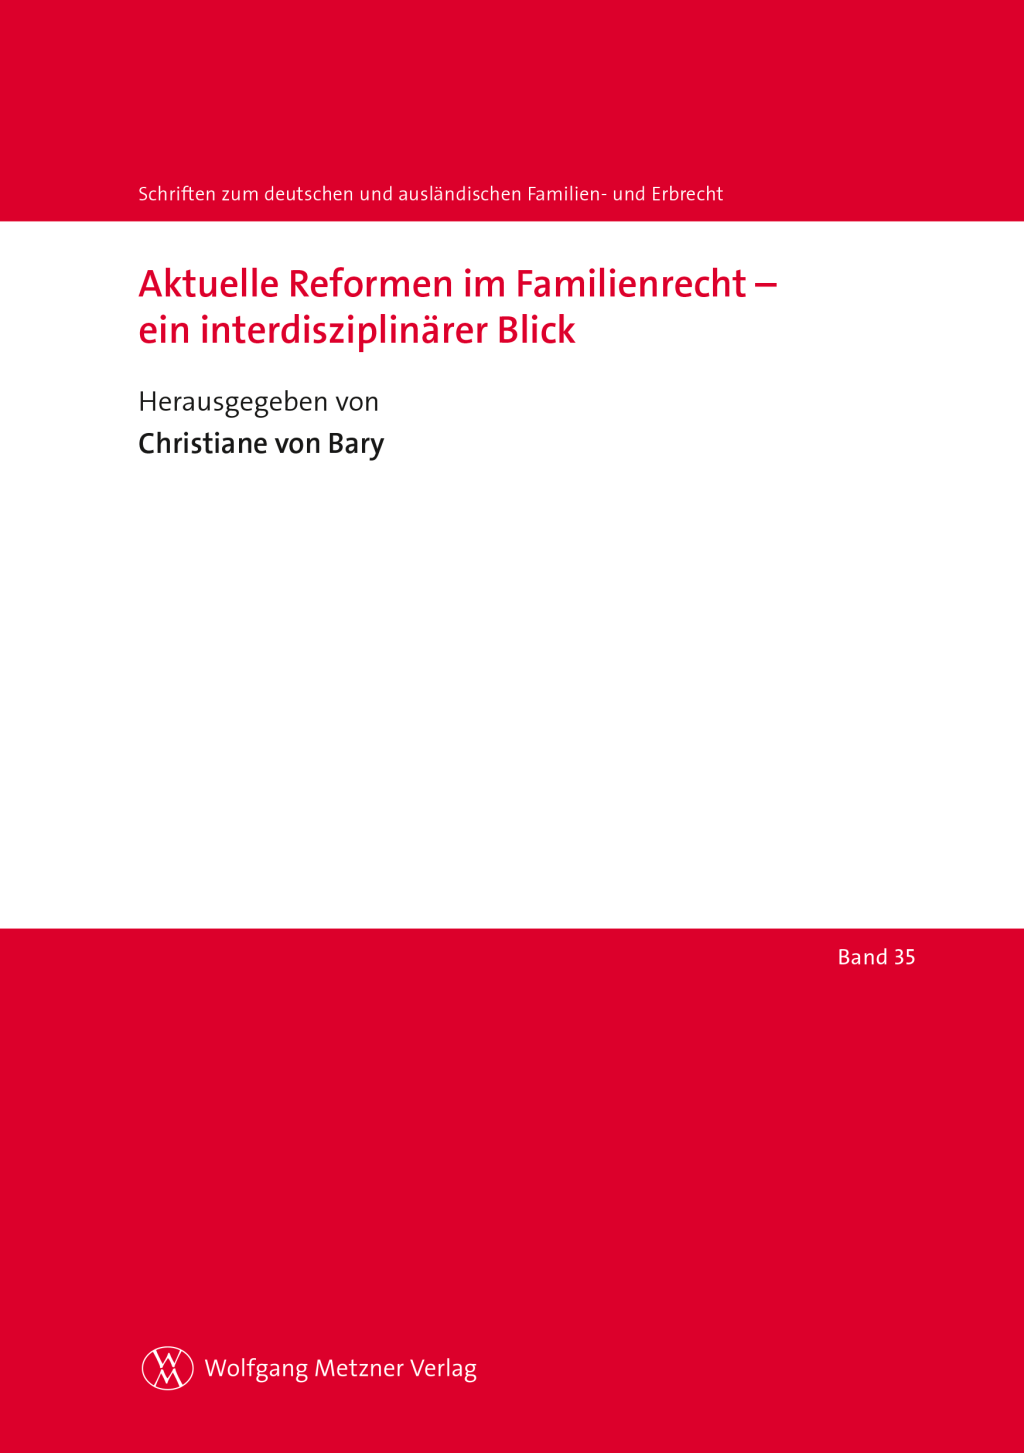 Aktuelle Reformen im Familienrecht – ein interdisziplinärer Blick